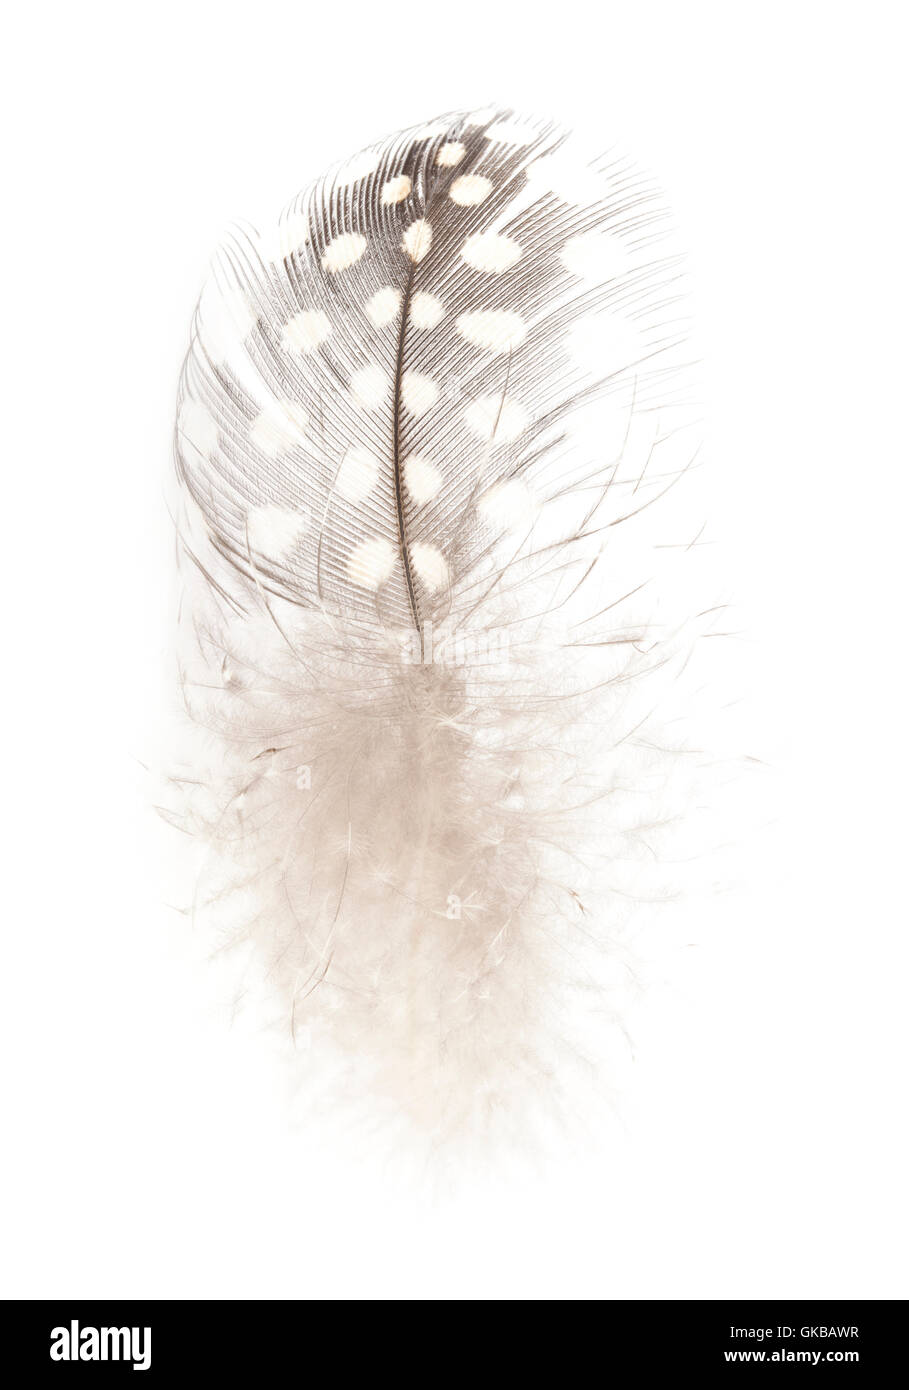 Eine einzelne schwarz-weiß gefleckte Feder eines Vogels Perlhuhn auf einem weißen Hintergrund Stockfoto